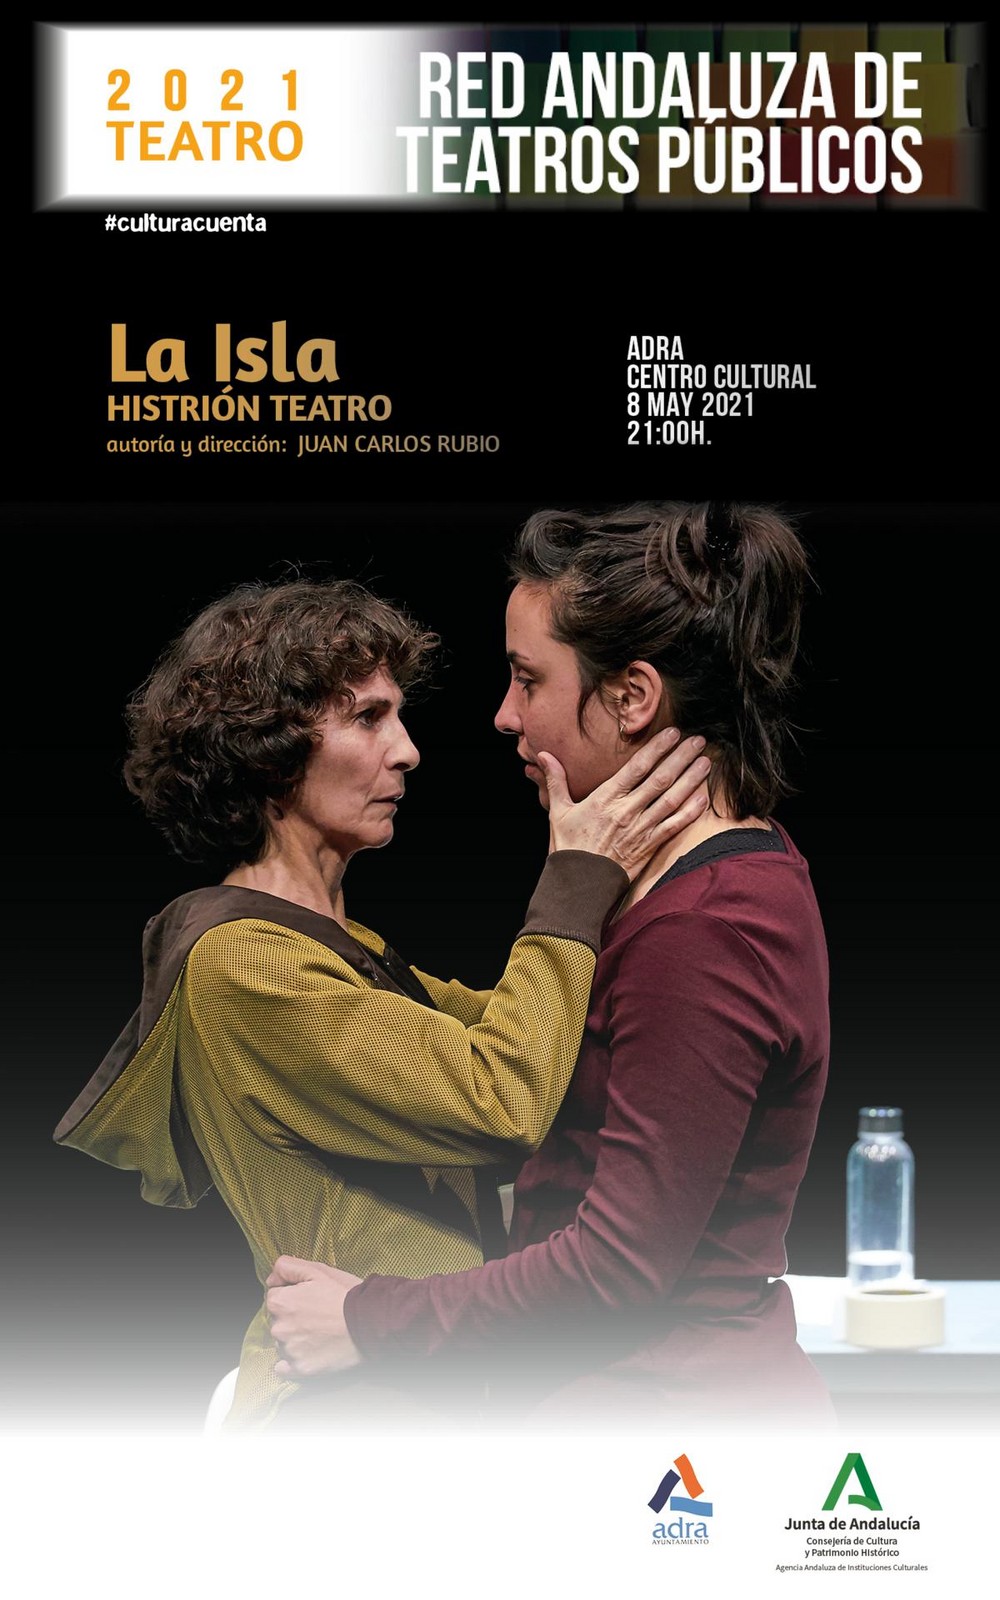 El Centro Cultural de Adra recibe la obra de teatro ‘La Isla’ el próximo 8 de mayo